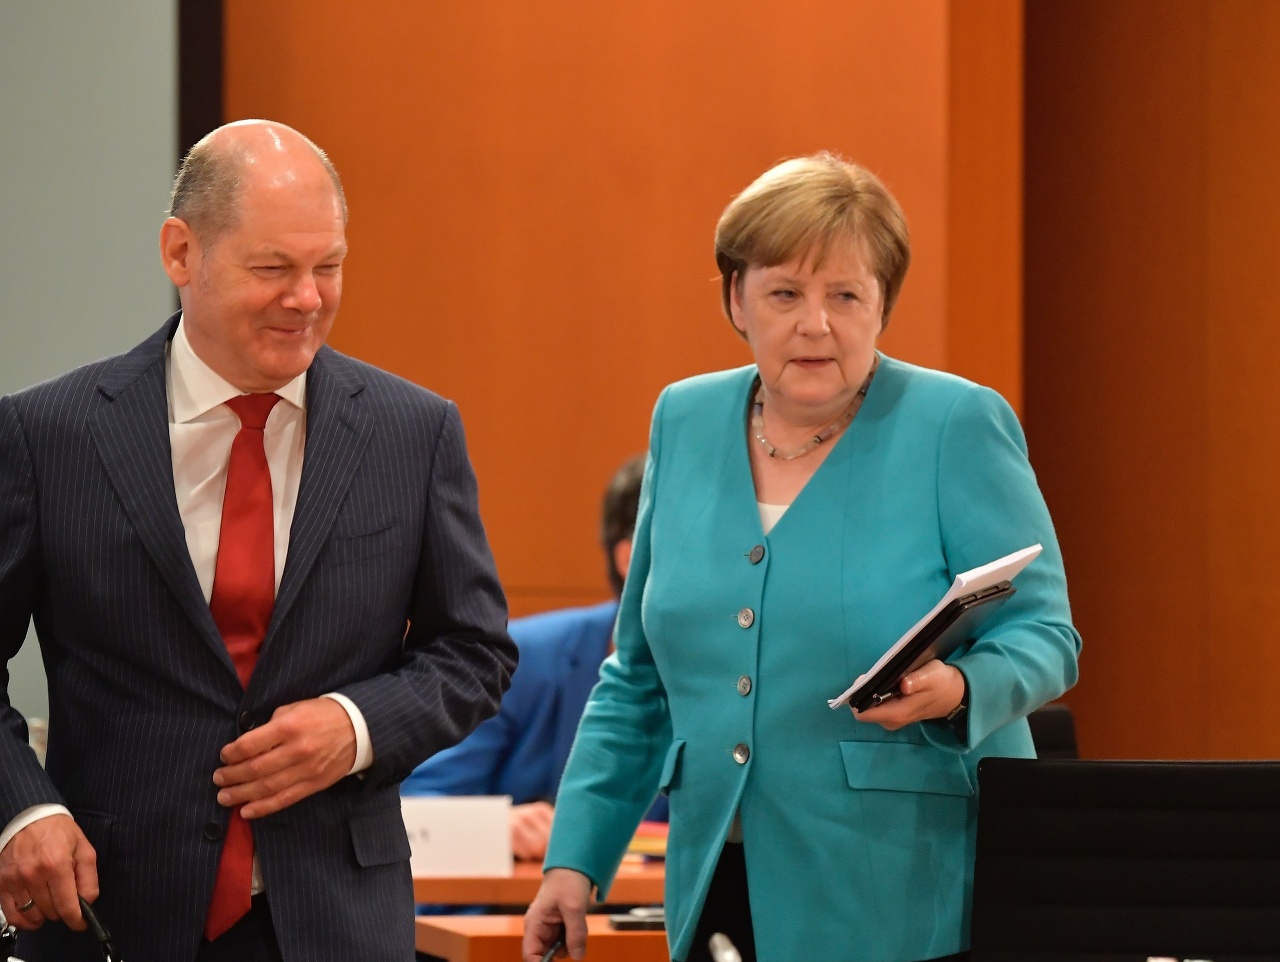 Nemecká kancelárka Angela Merkelová a minister financií Olaf Scholz